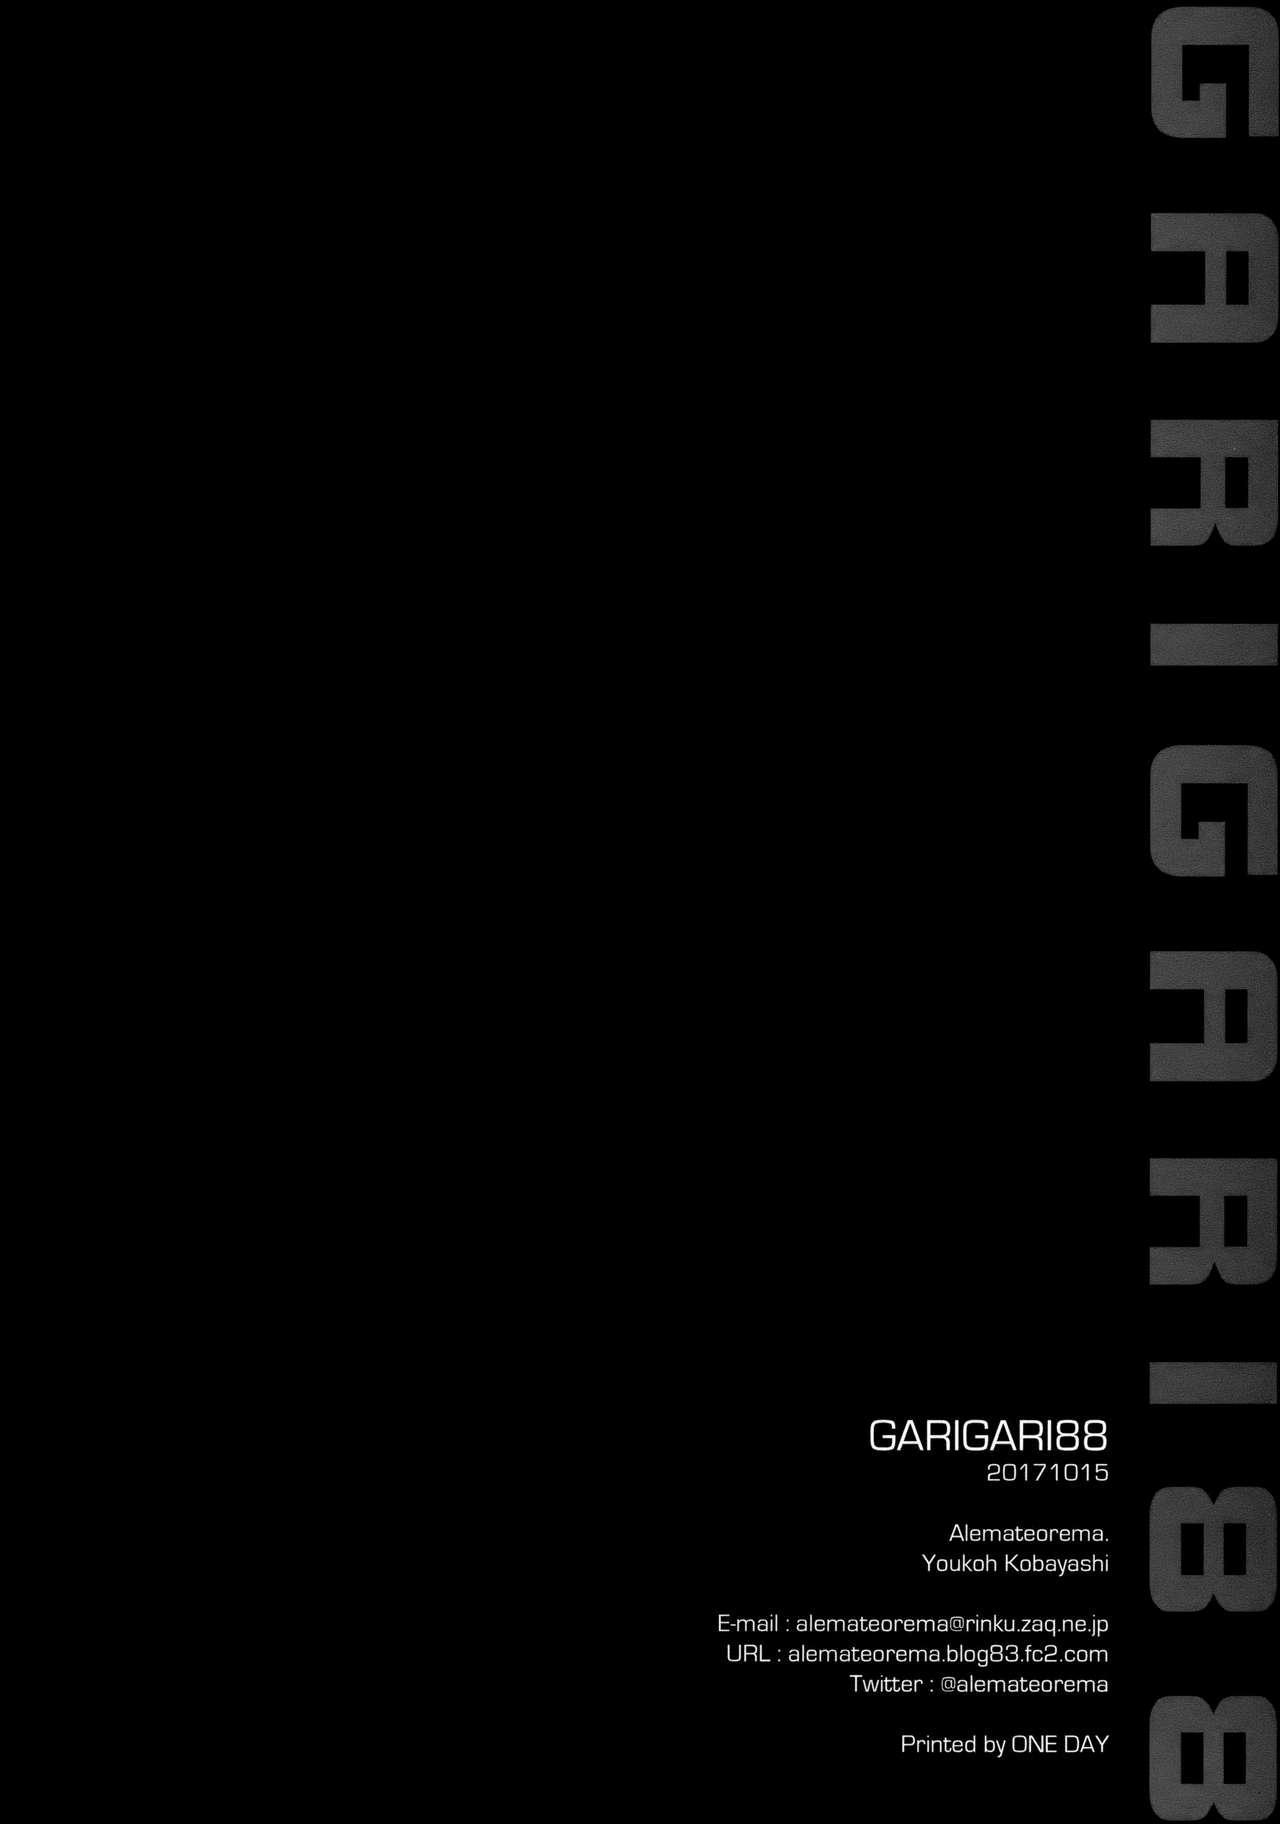 GARIGARI88 19